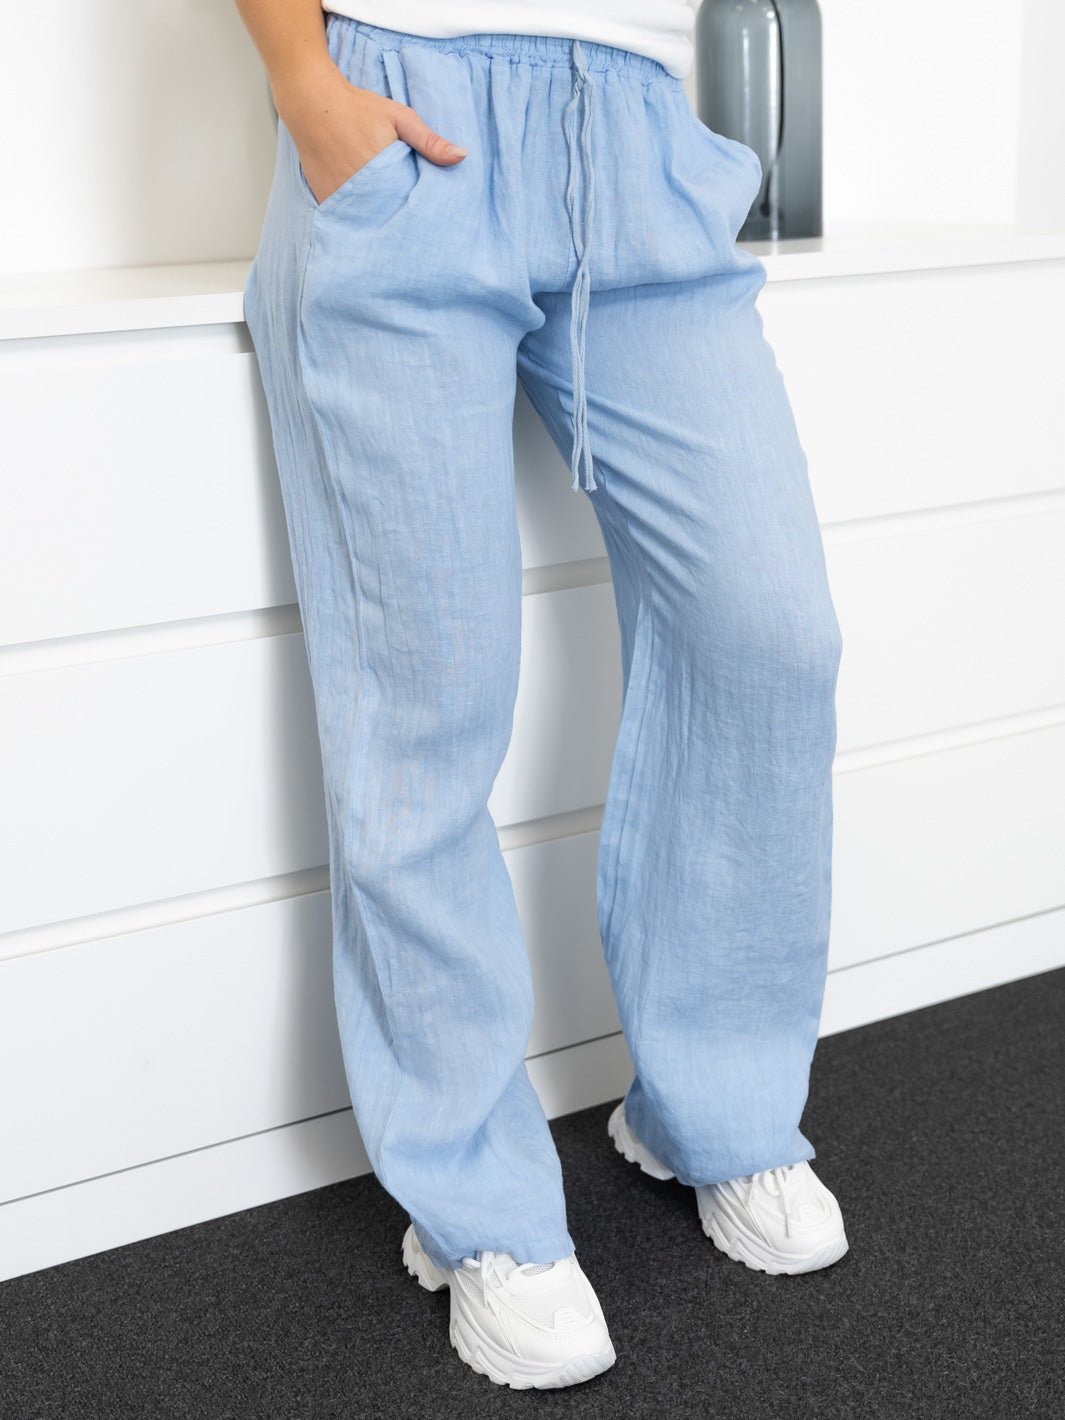 Shay hør pants light blue - Online-Mode